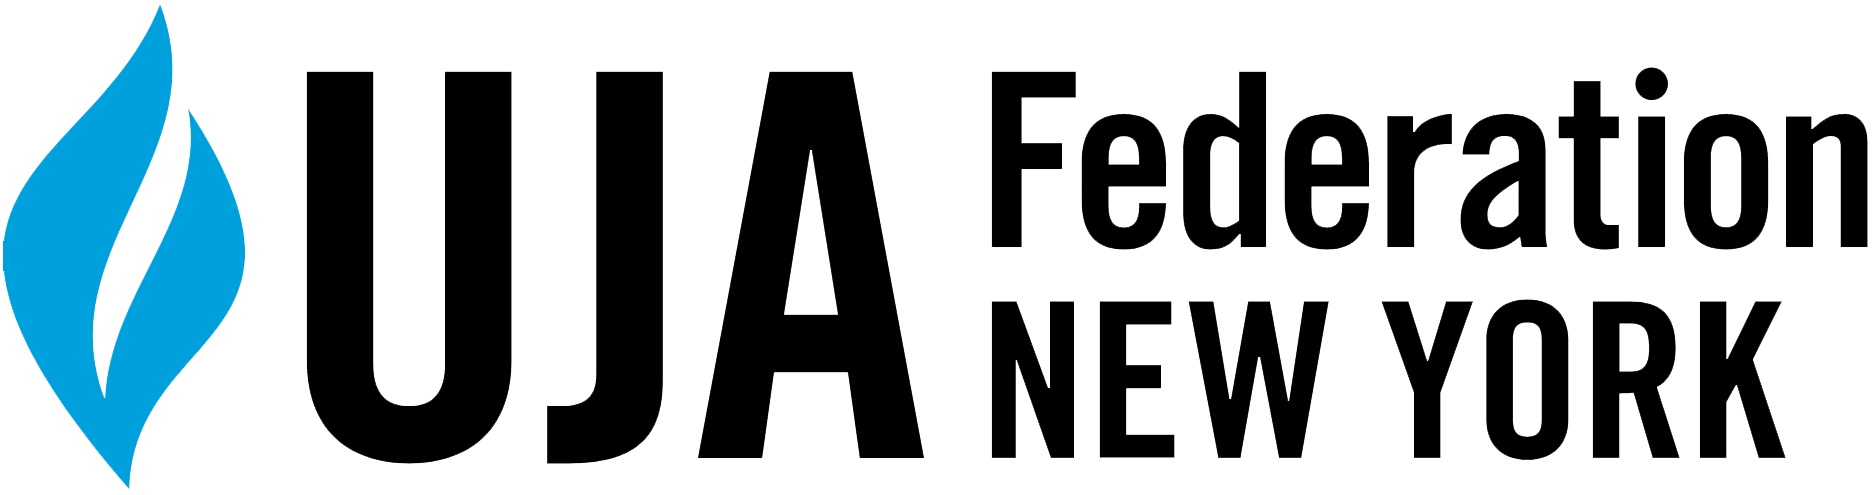 UJA Federation NY Logo